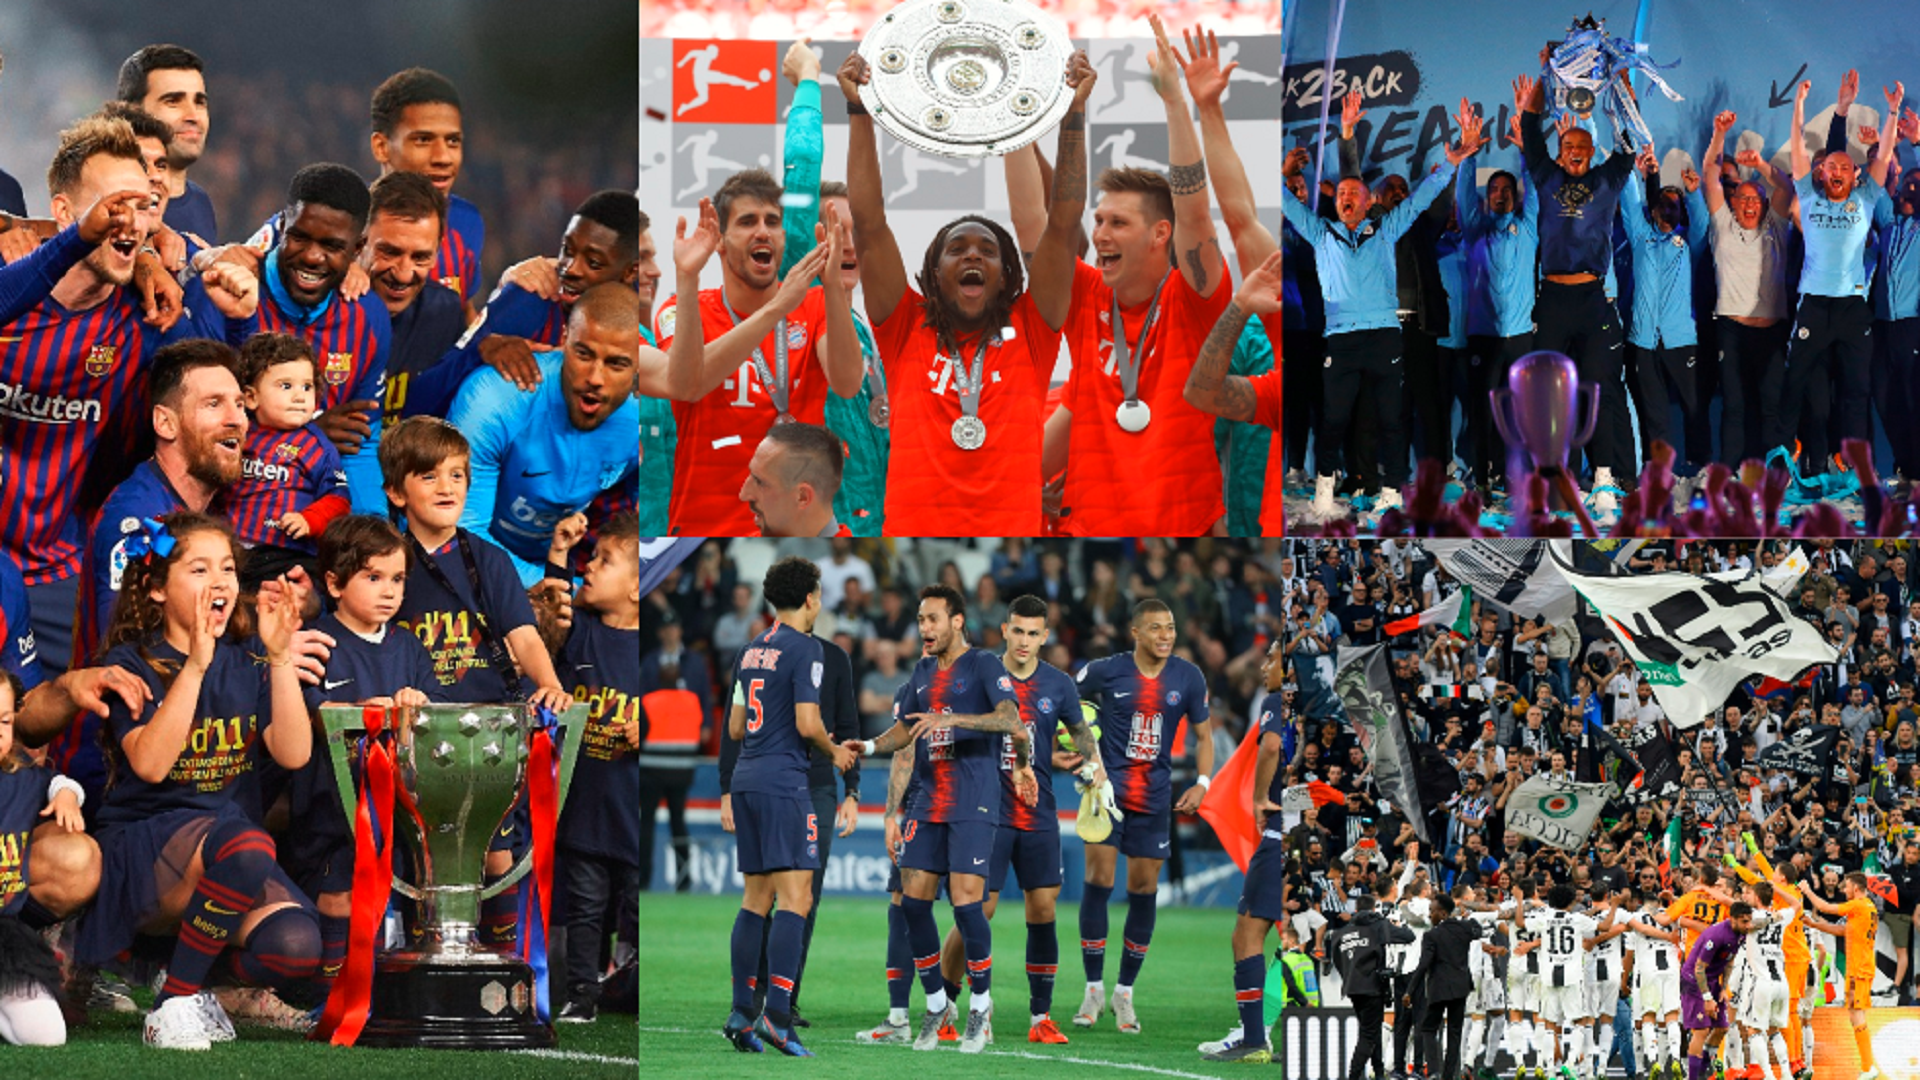 ختام الموسم أبطال الدوريات الأوروبية الكبرى يكتبون التاريخ